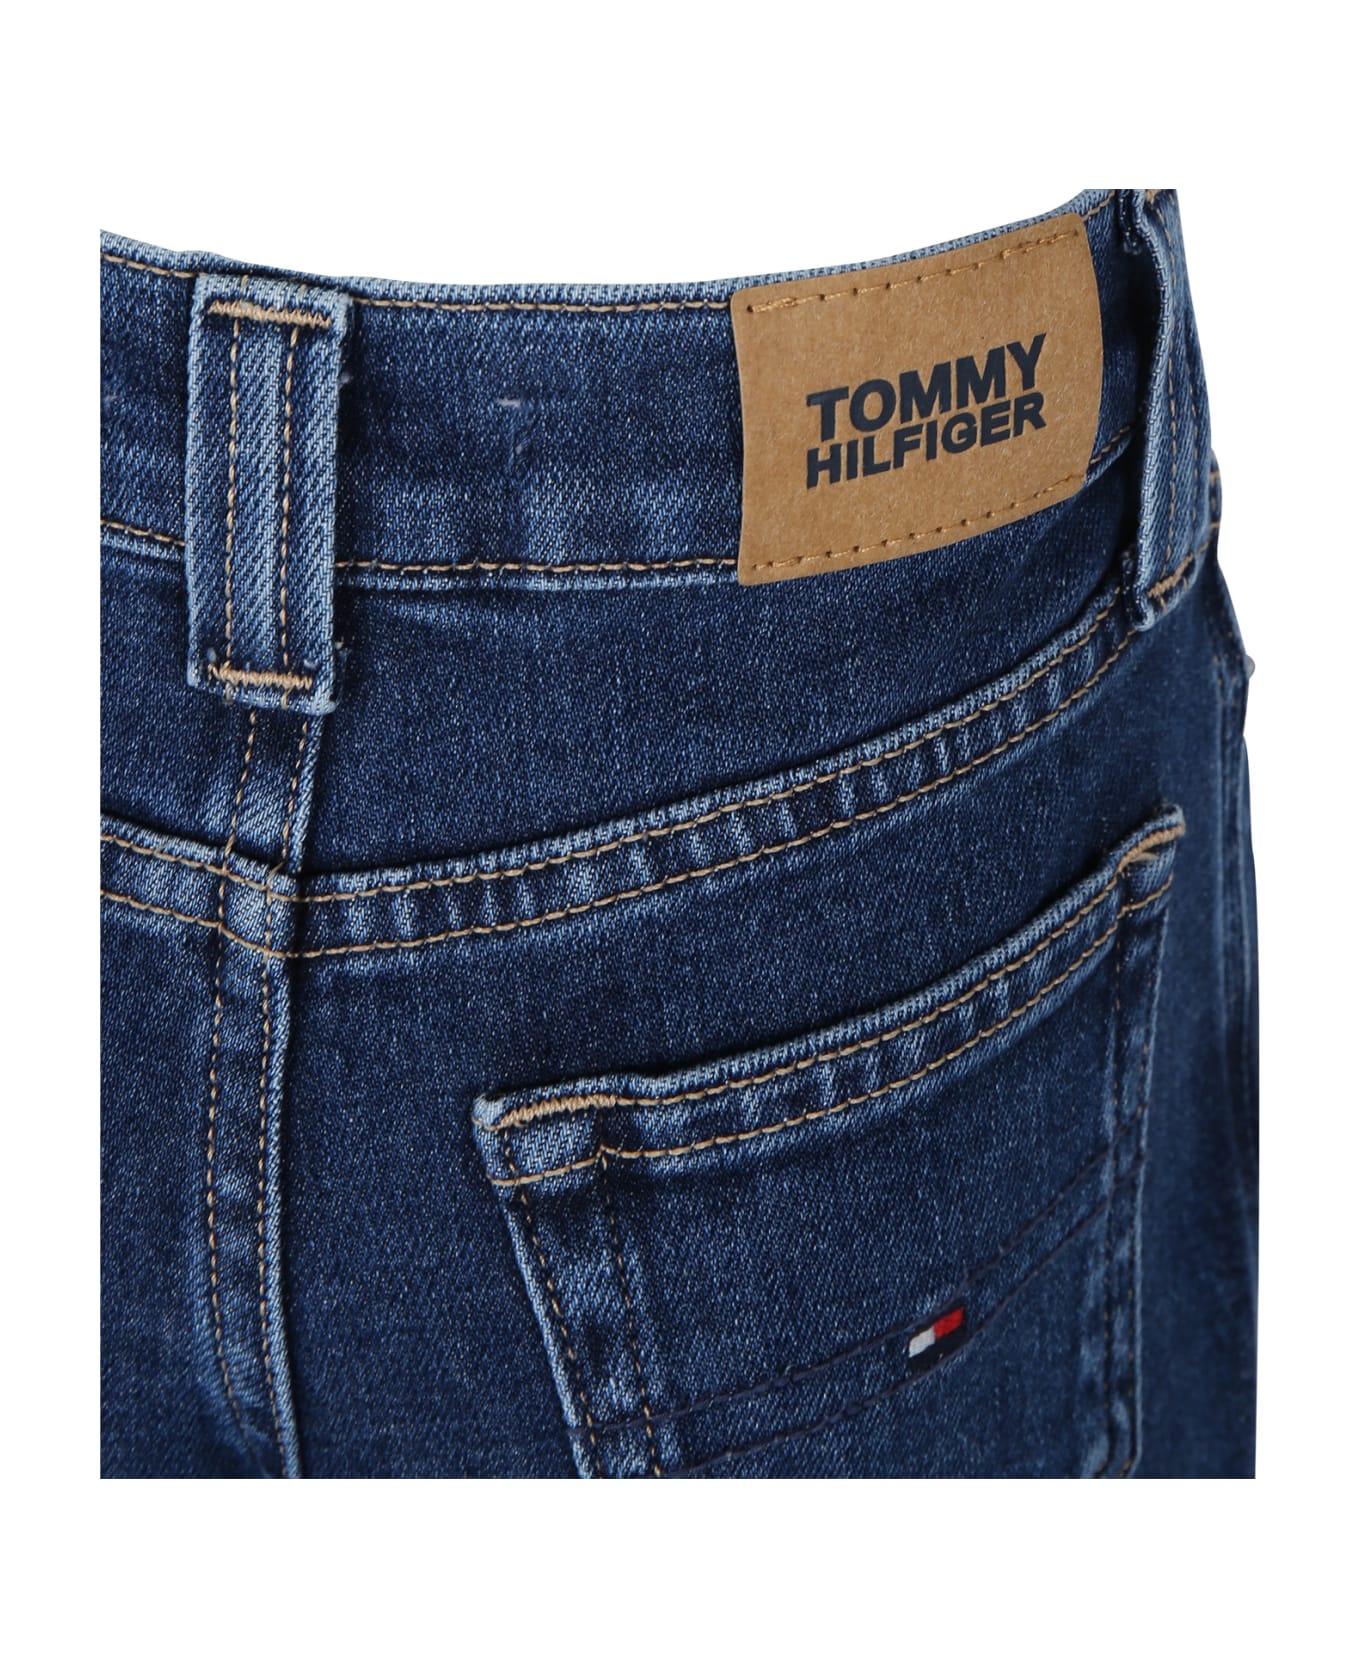 Tommy Hilfiger Denim Jeans For Girl With Logo - Denim